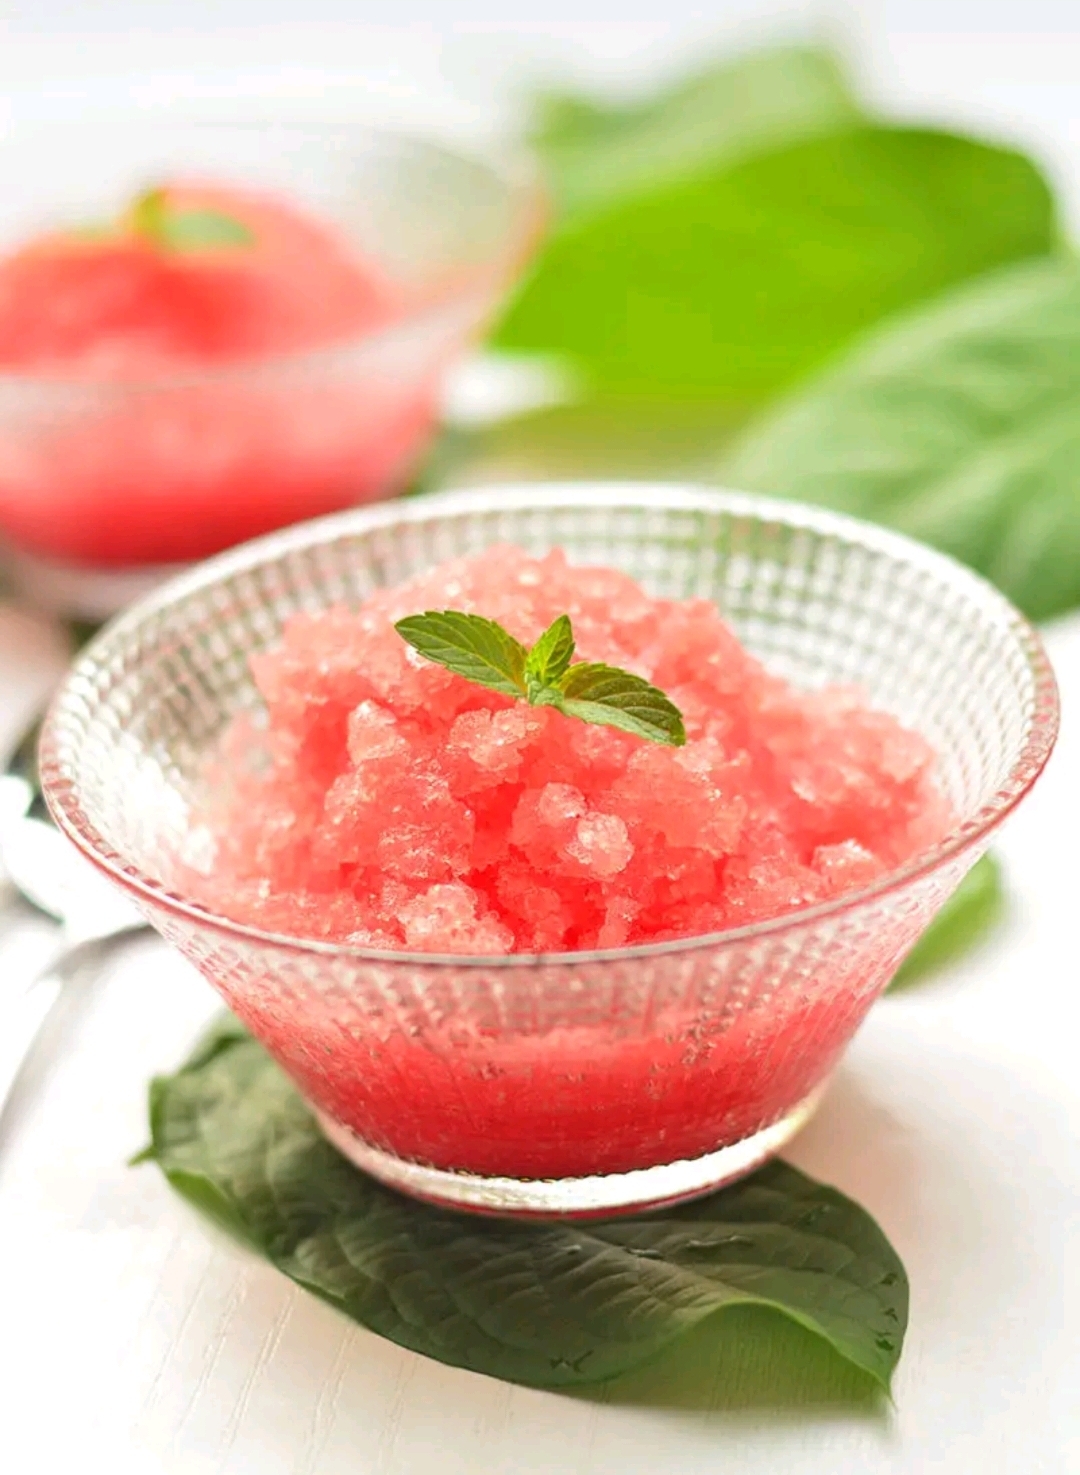 冰冰凉凉的西瓜刨冰～的做法